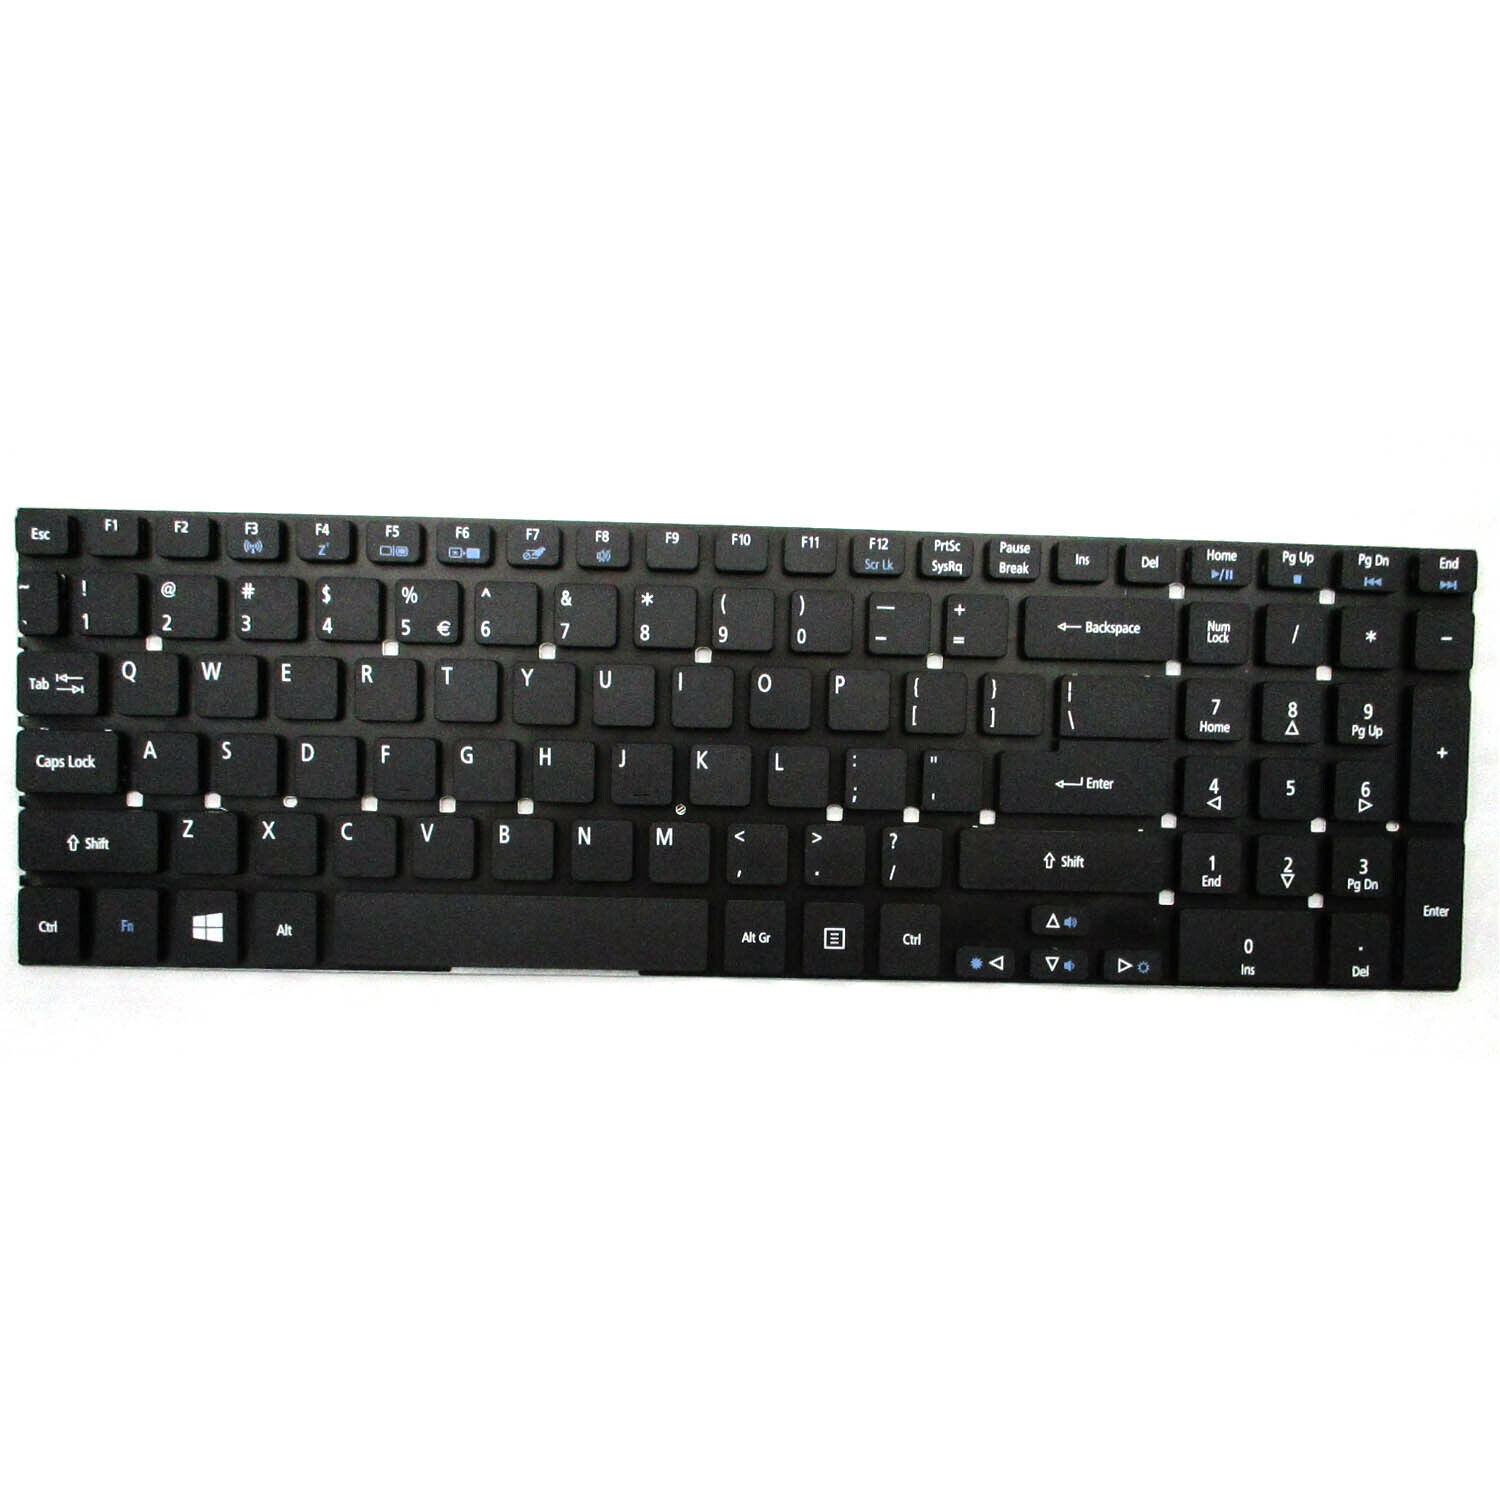 New Original Keyboard for Acer Aspire V5-561 V5-561G V5-561P V5-561PG V3-7710 - $24.99